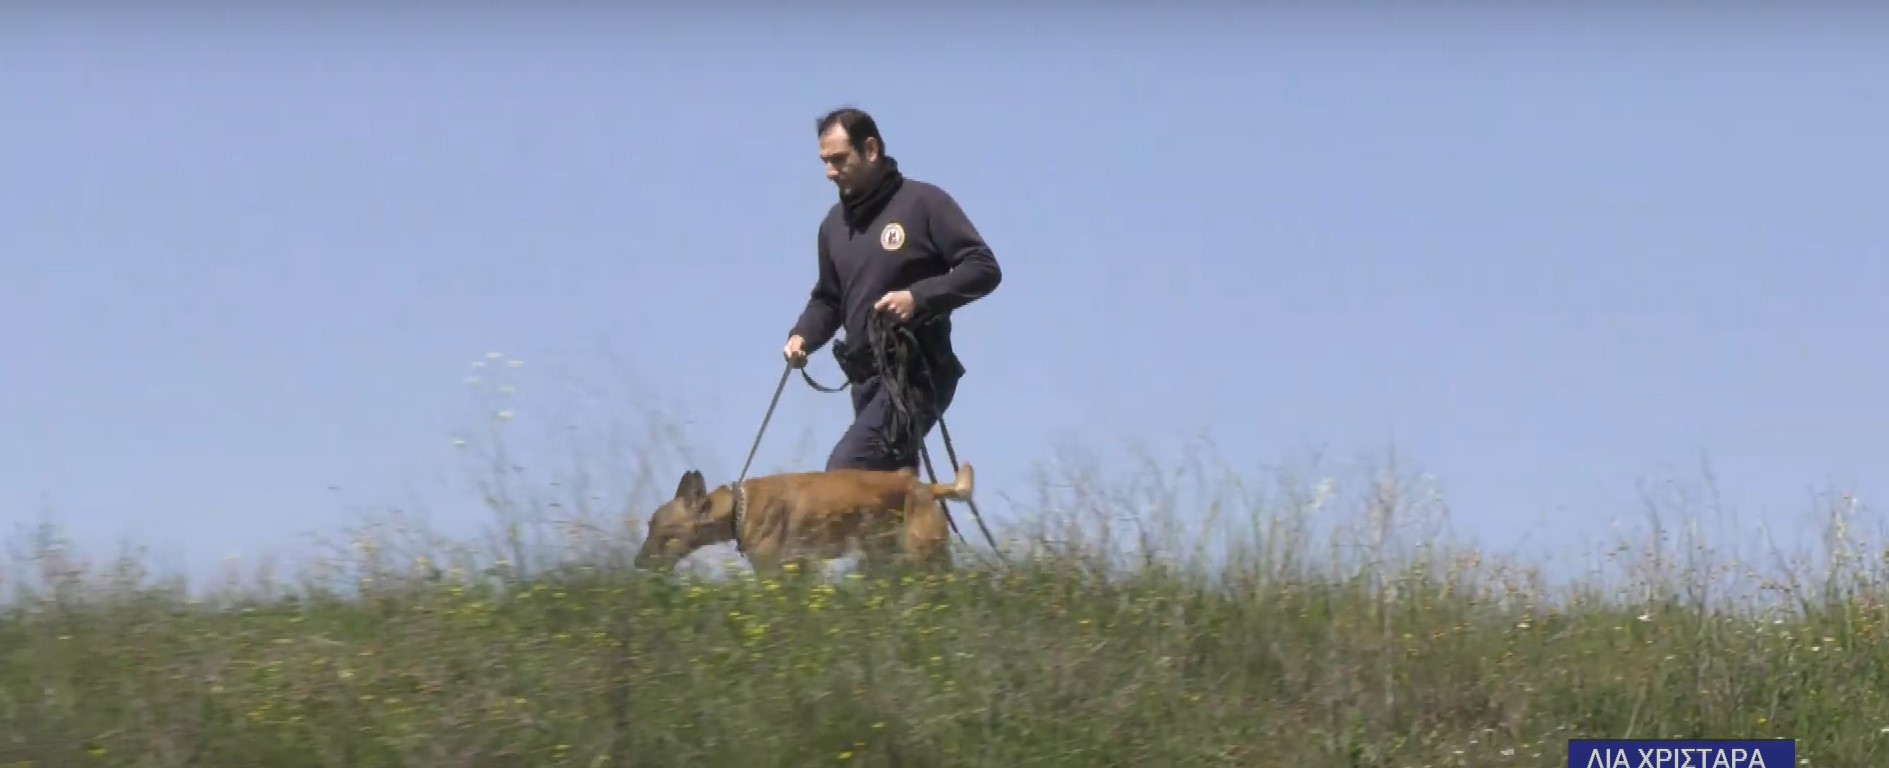 Θεσσαλονίκη: Με σκυλιά της αστυνομίας συνεχίζεται η έρευνα για τον 34χρονο δολοφόνο στη Χαλκηδόνα